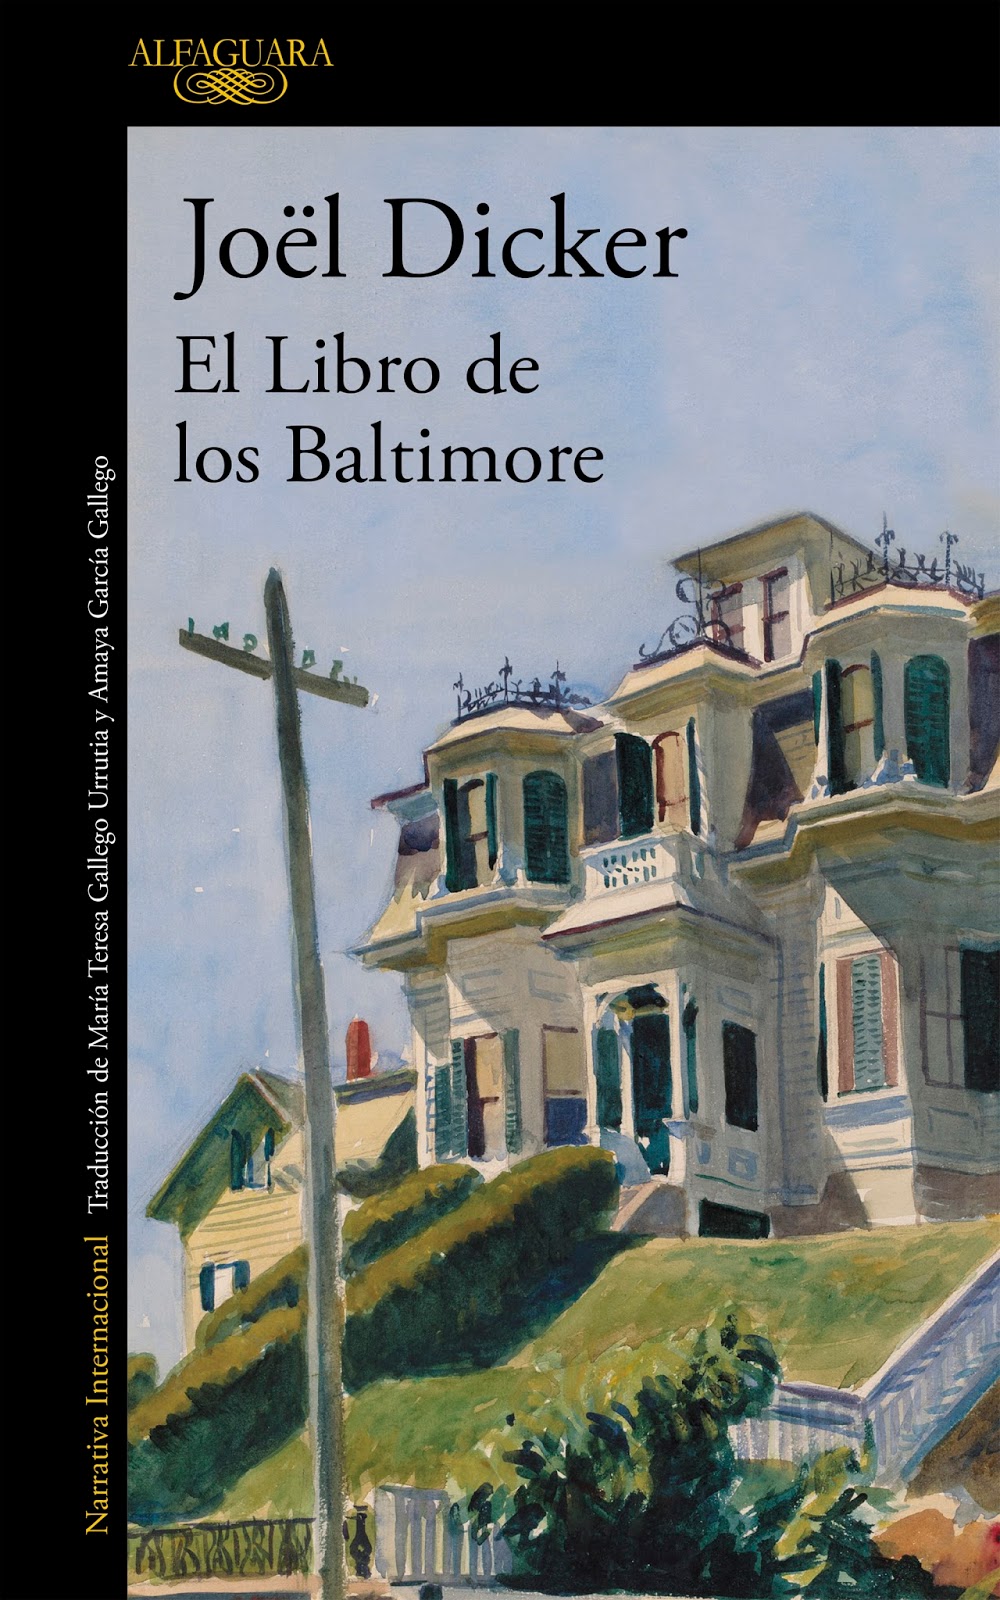 La novela de los Baltimore, de Joël Dicker